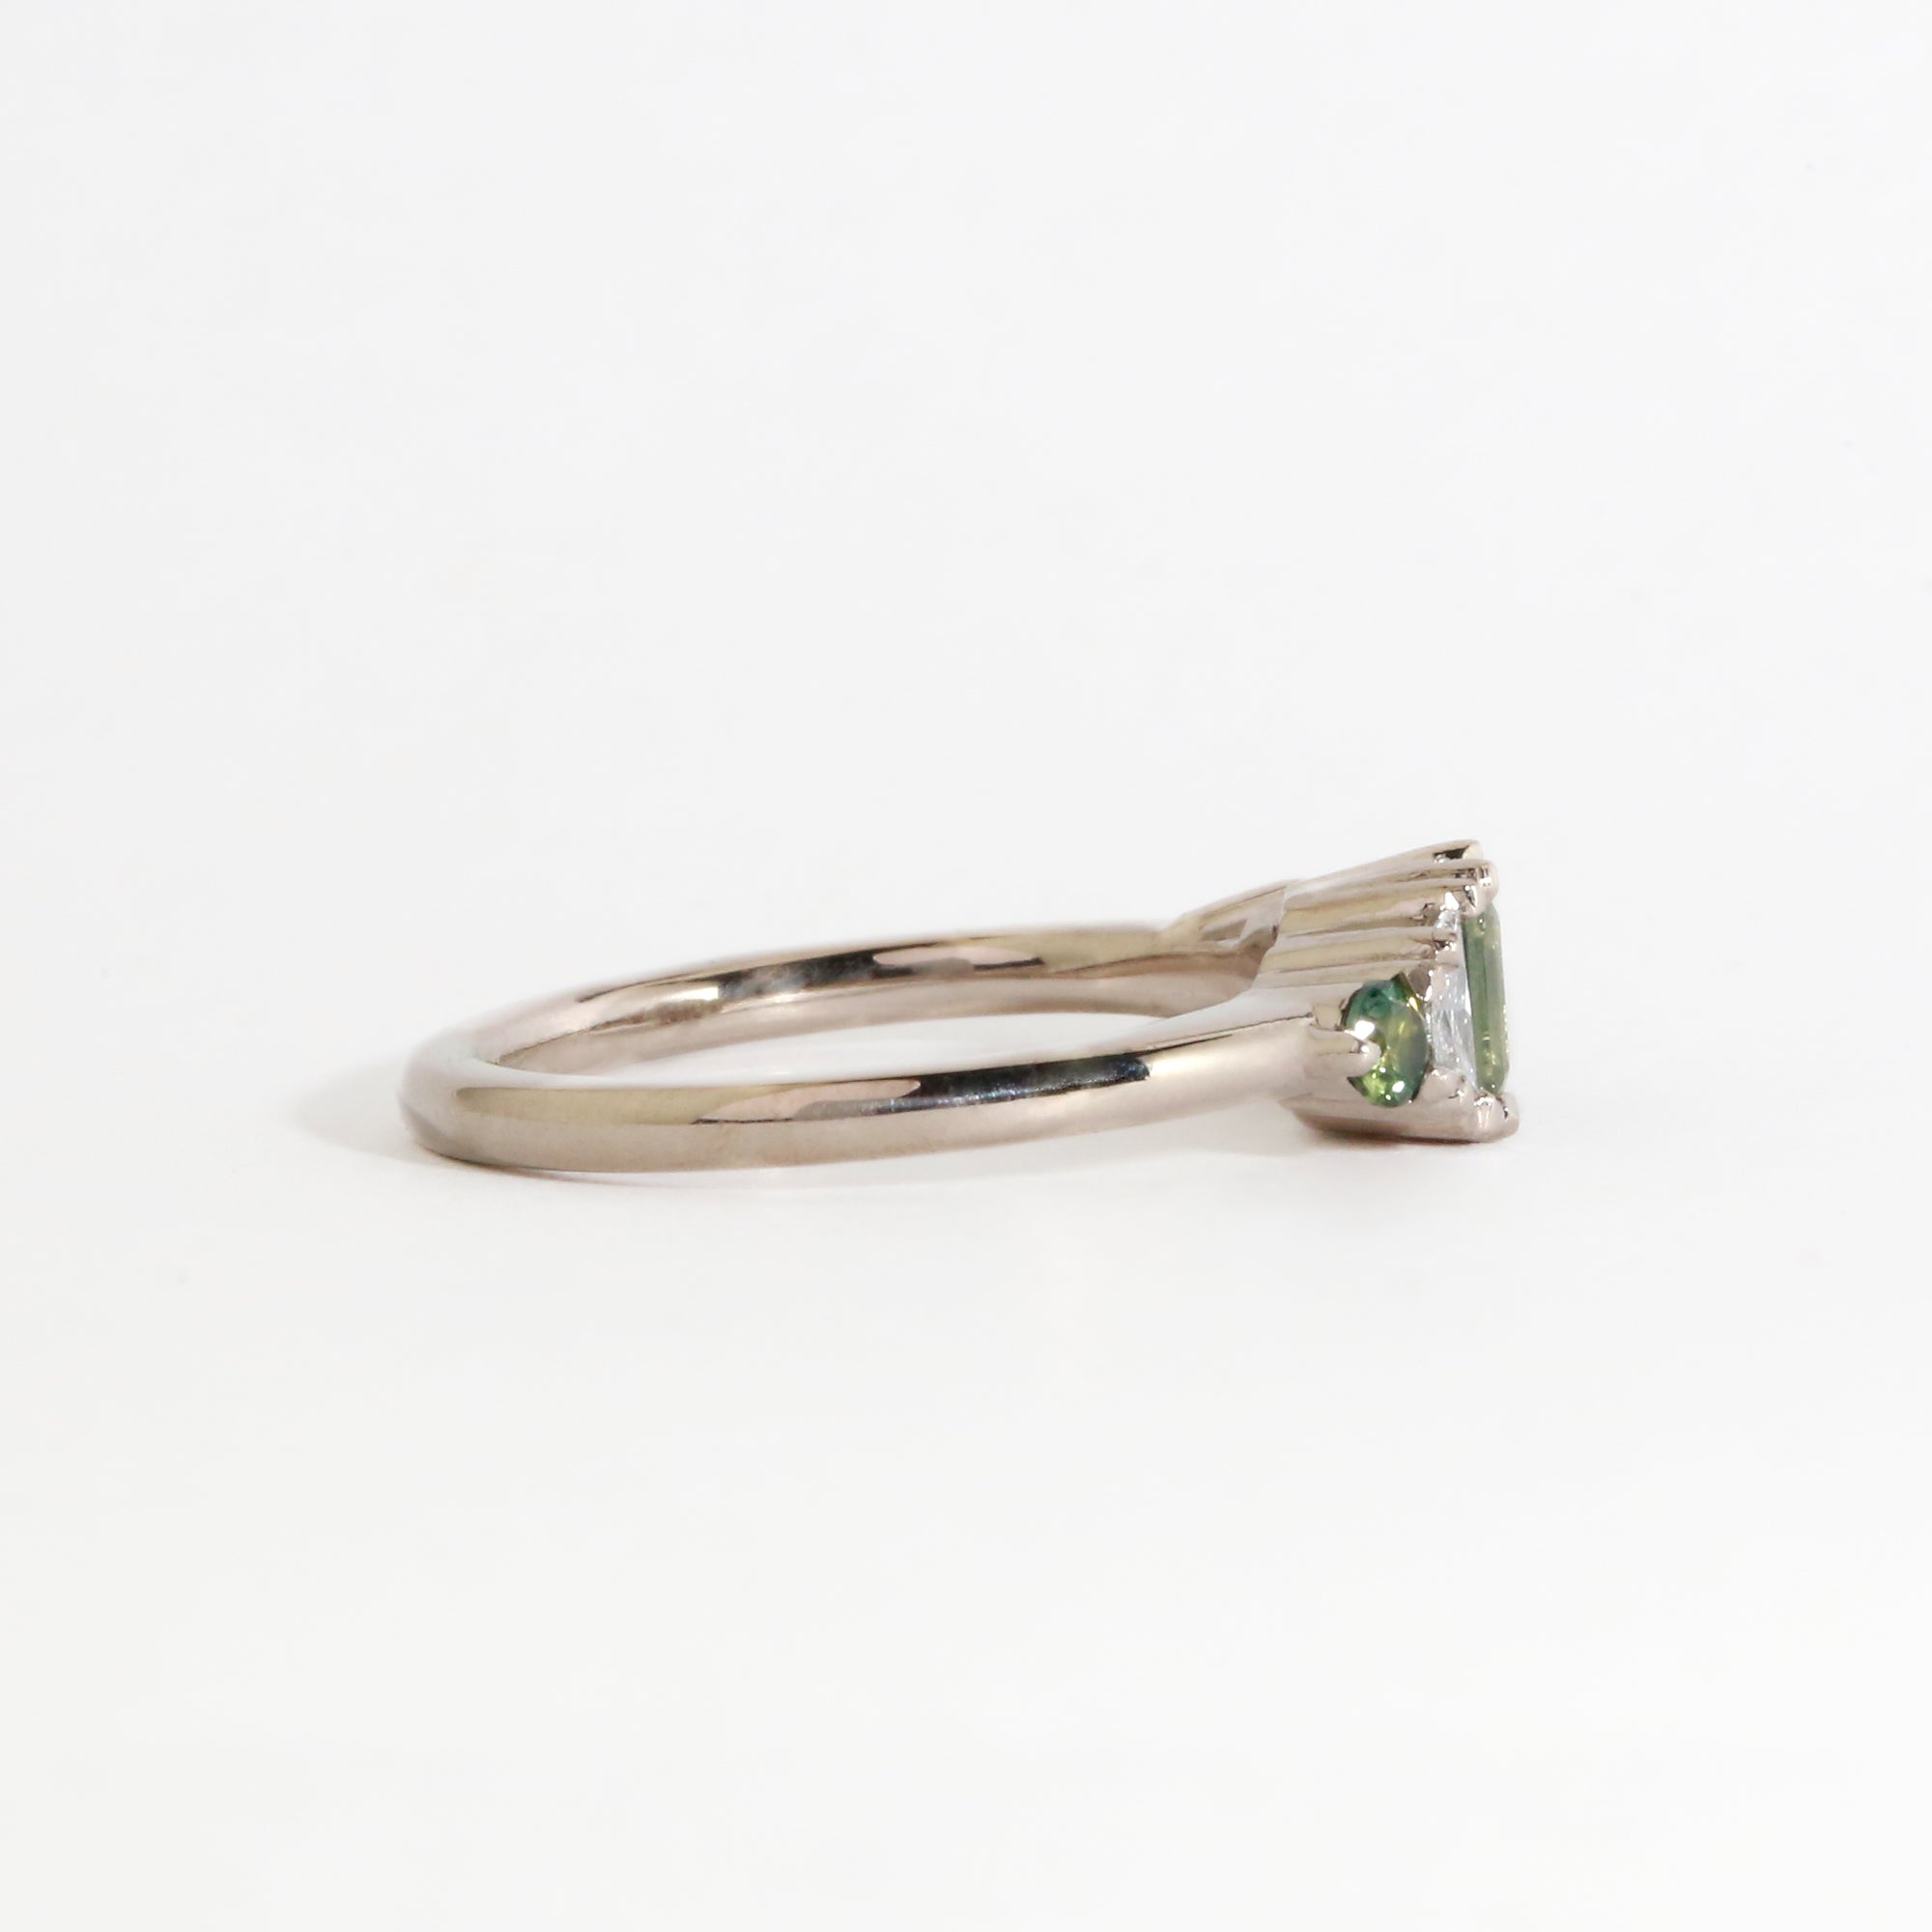 Valis Sapphire and Diamond Ring